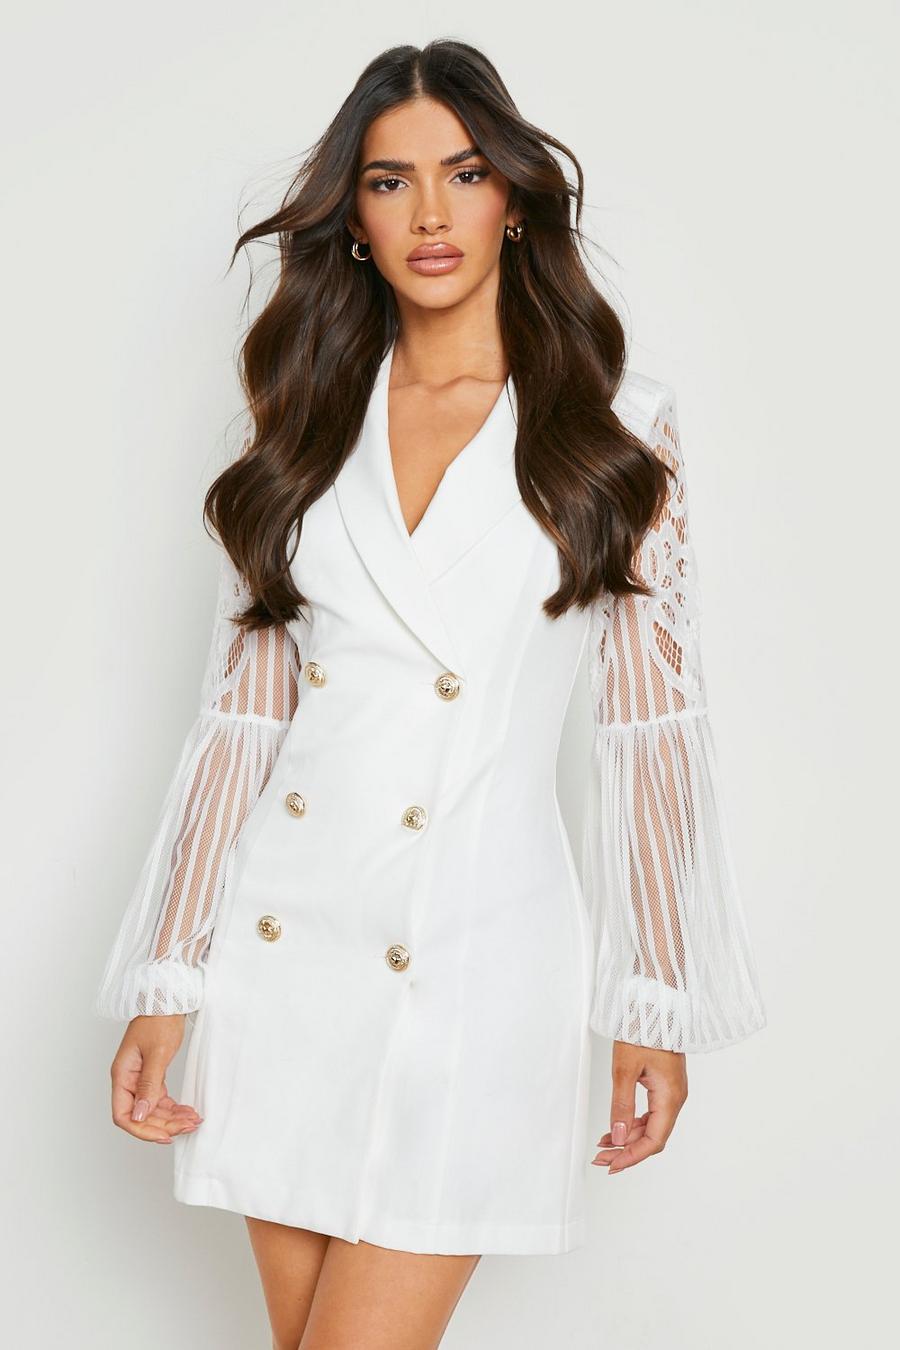 Ivory white Lace Sleeve Blazer Dress